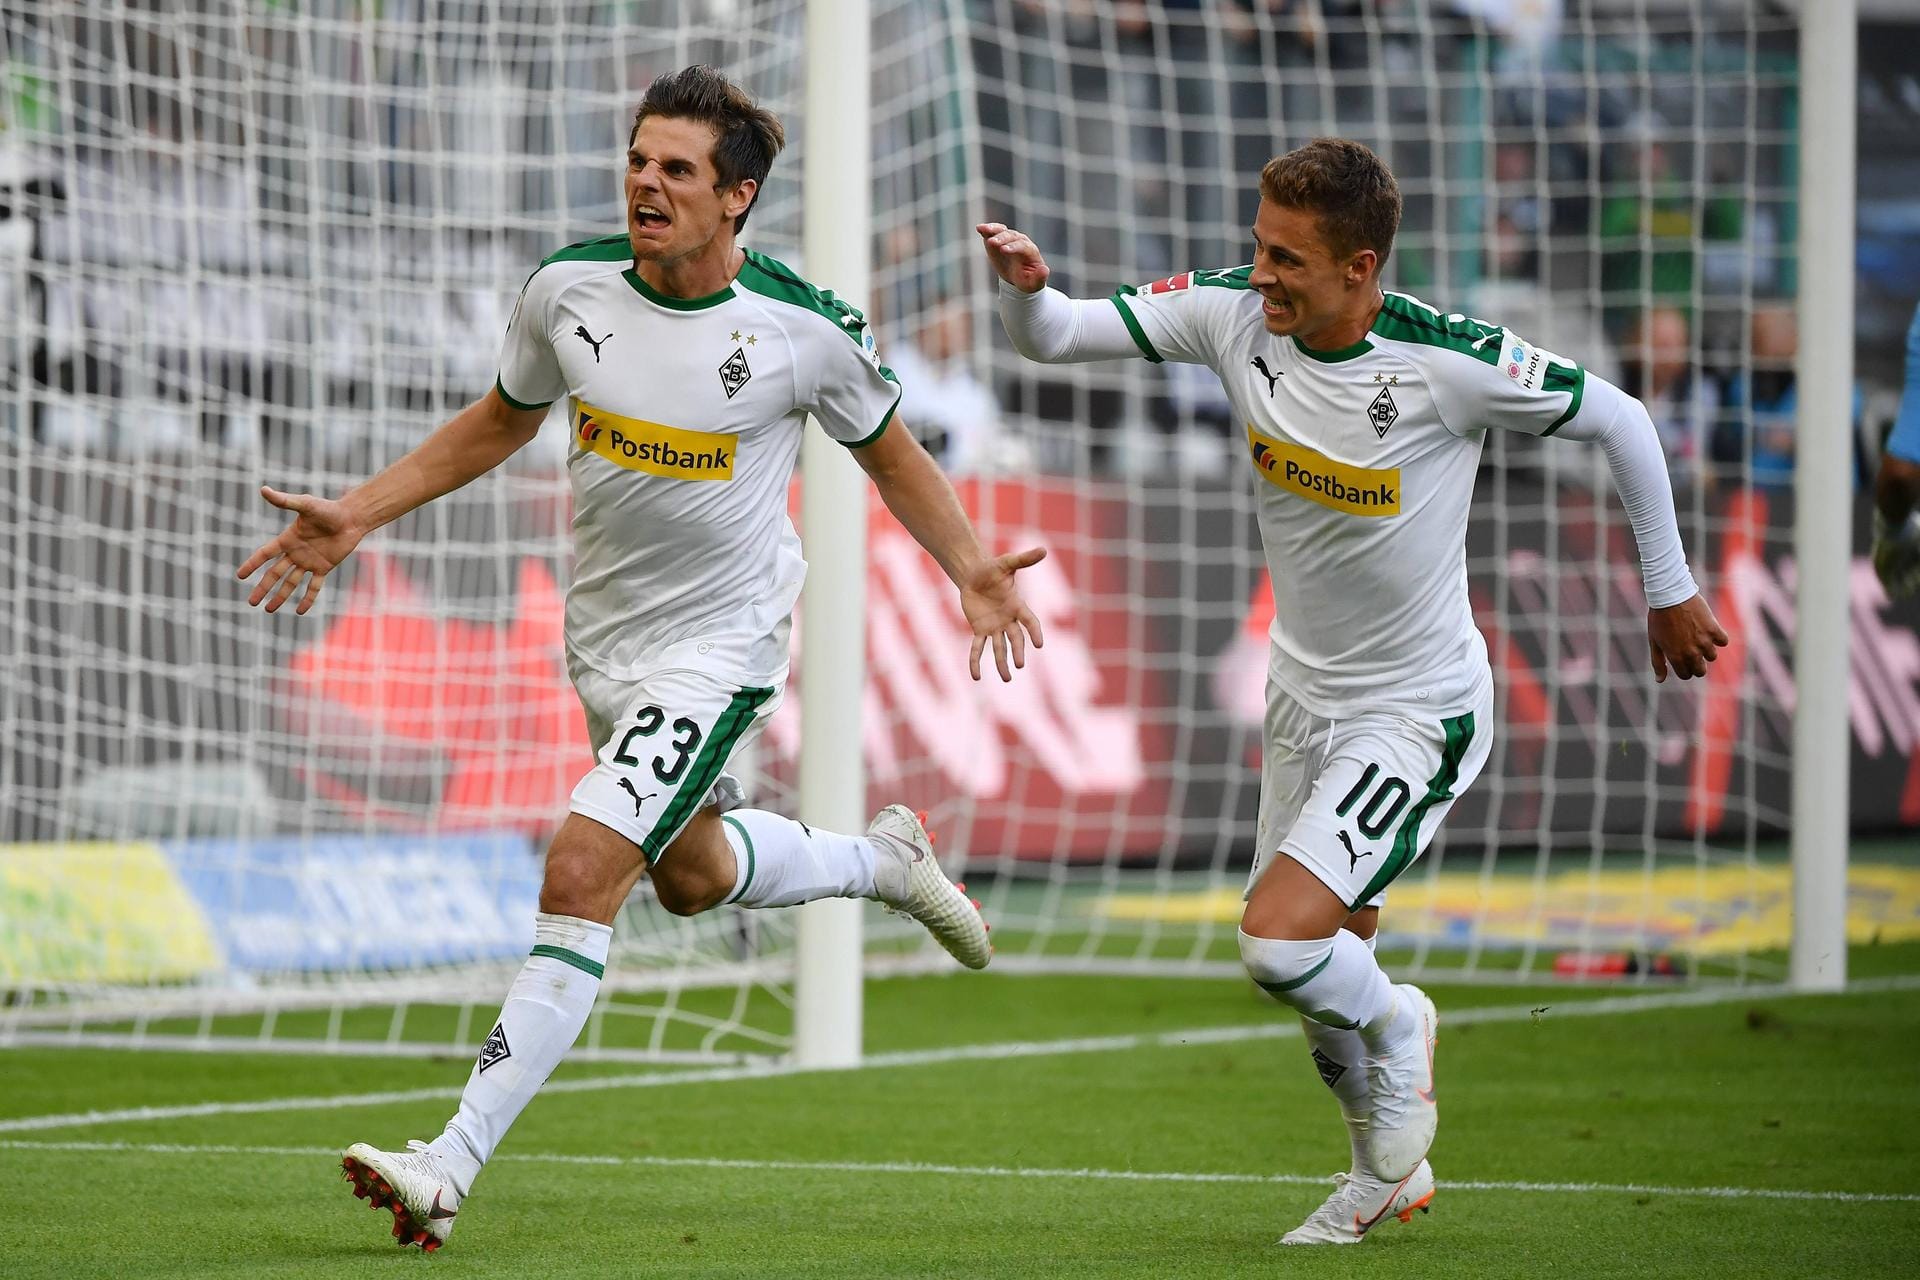 Drei Jahre lang erzielte er kein Bundesliga-Tor, dann verwandelte Jonas Hofmann den Elfmeter zum 1:0 gegen Bayer Leverkusen.